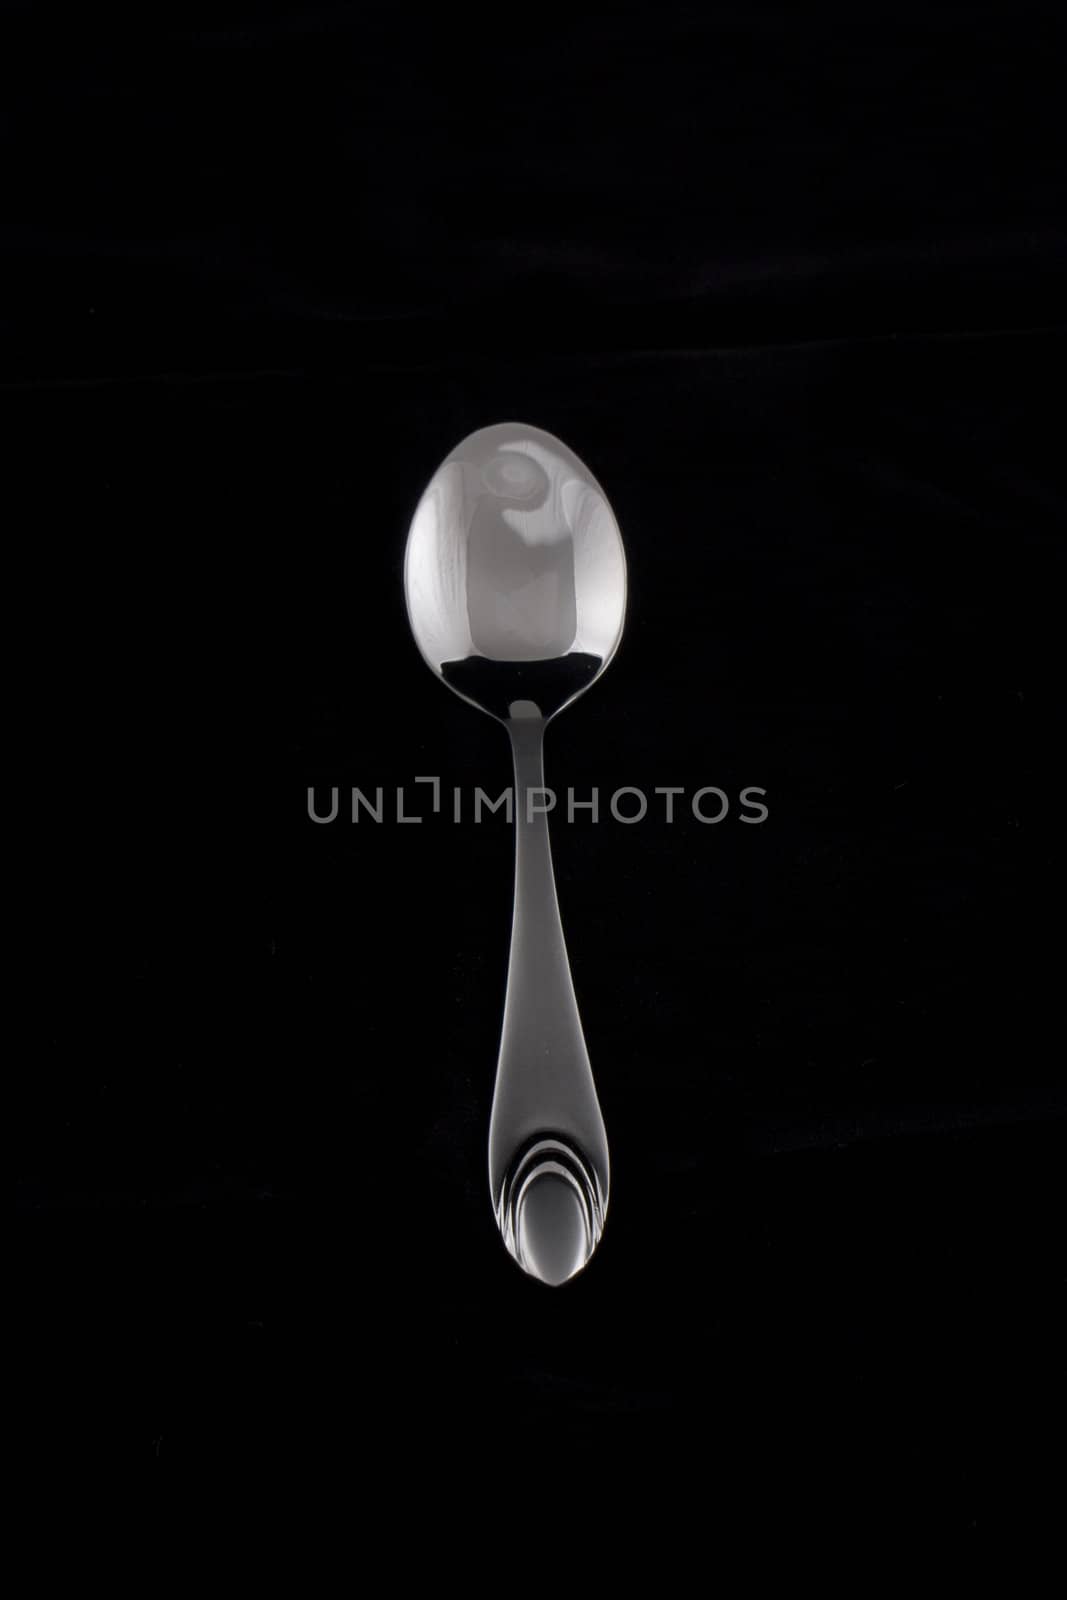 tea-spoon on black background